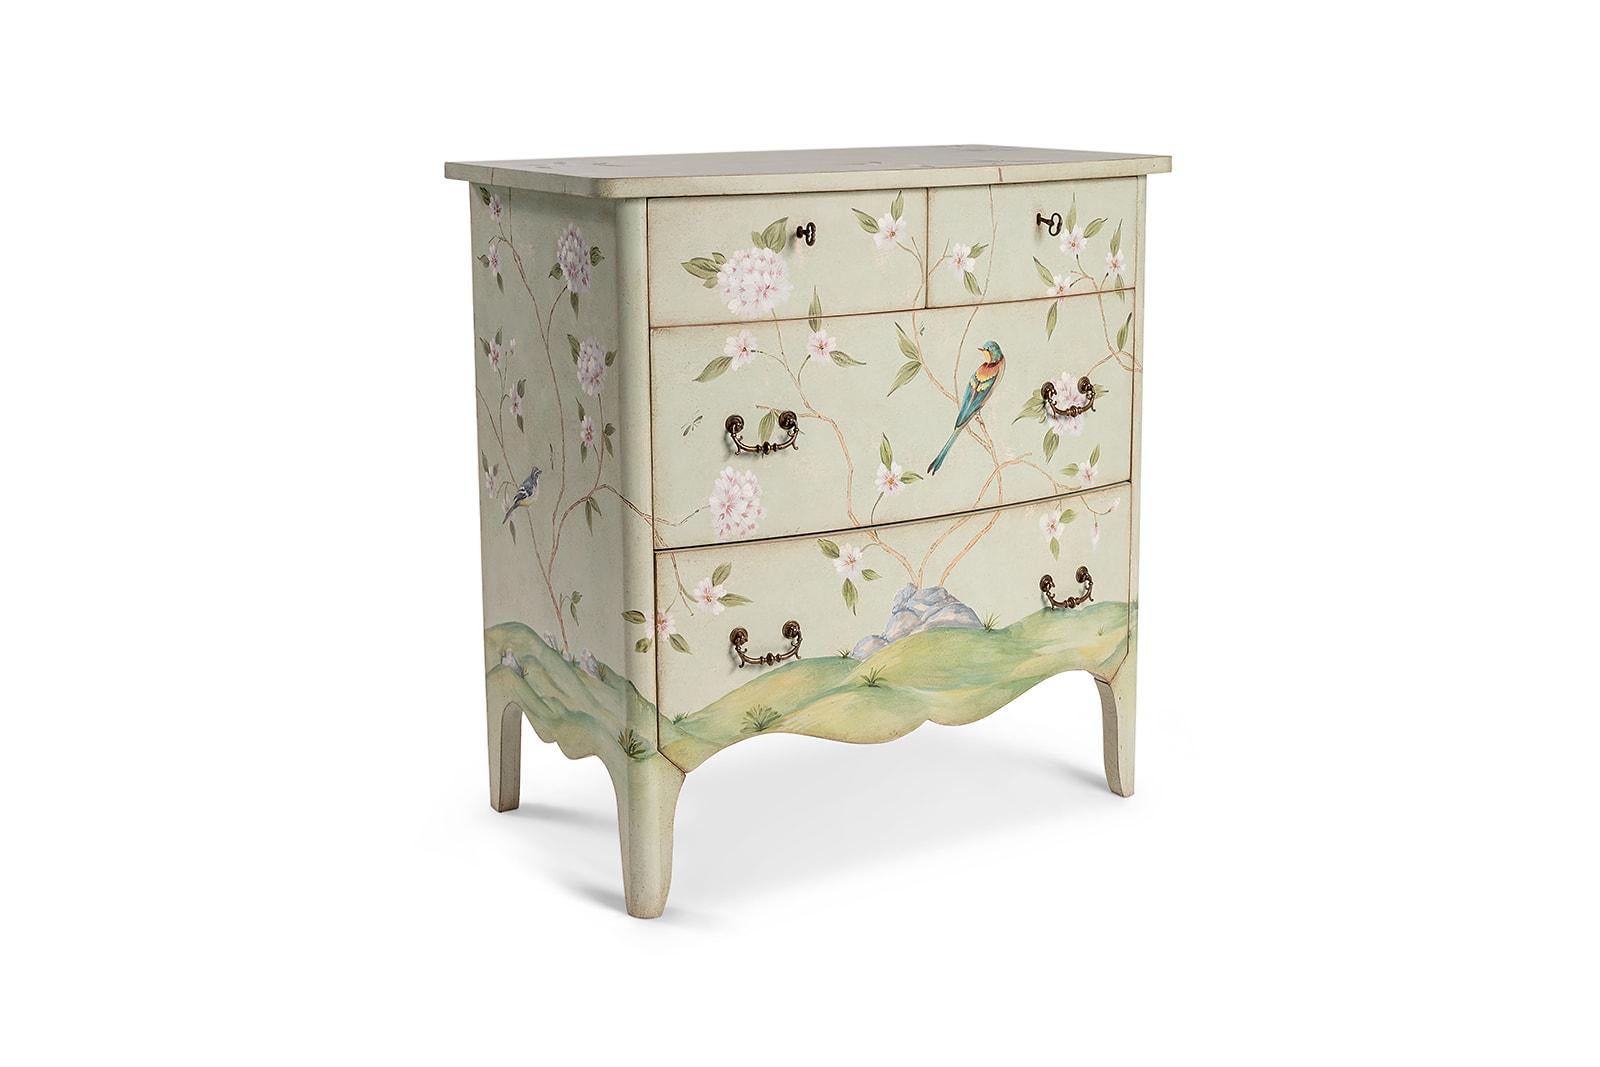 Aus unserer Hand-Painted Furniture Collection freuen wir uns, Ihnen unsere hellblaue Kommode Dorsoduro vorstellen zu dürfen. 
Dieses schöne Stück spiegelt die Süße jener stillen Sonntagmorgen wider - wenn das Morgenlicht die zarten Frühlingsblumen